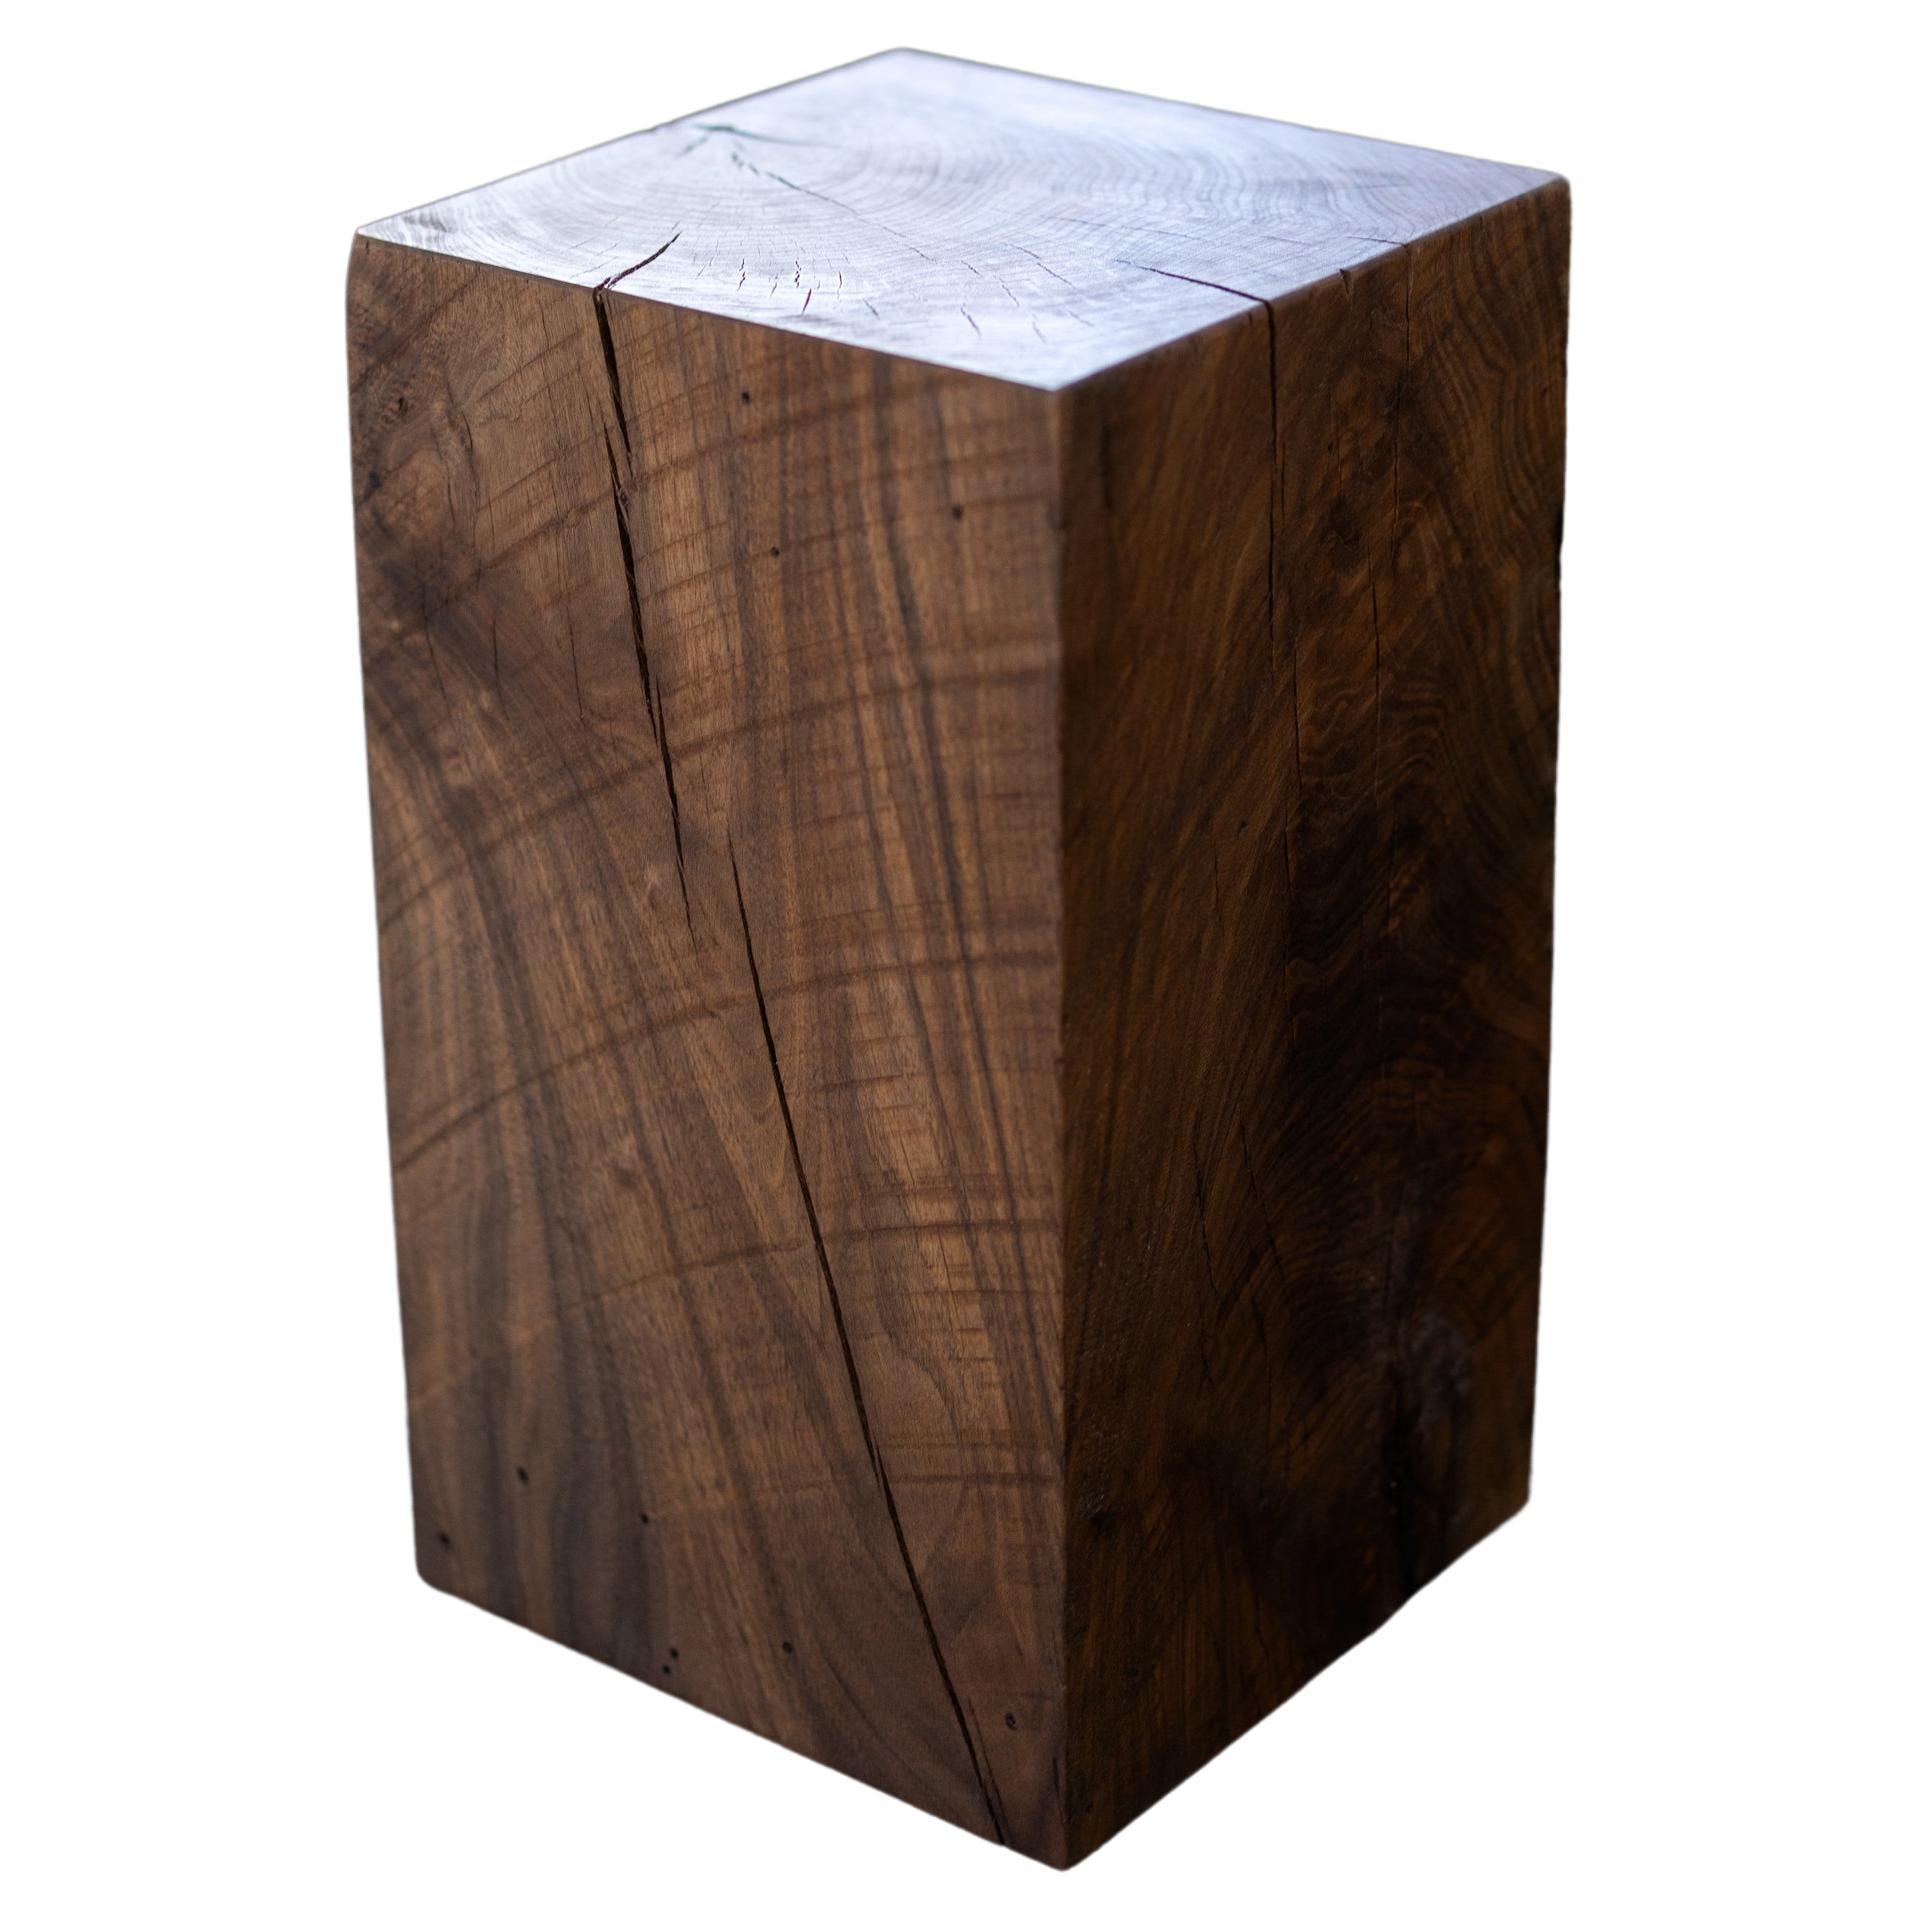 Walnut Solid Wood Cube Side Table (12" x 12" x 20" H) by Alabama Sawyer